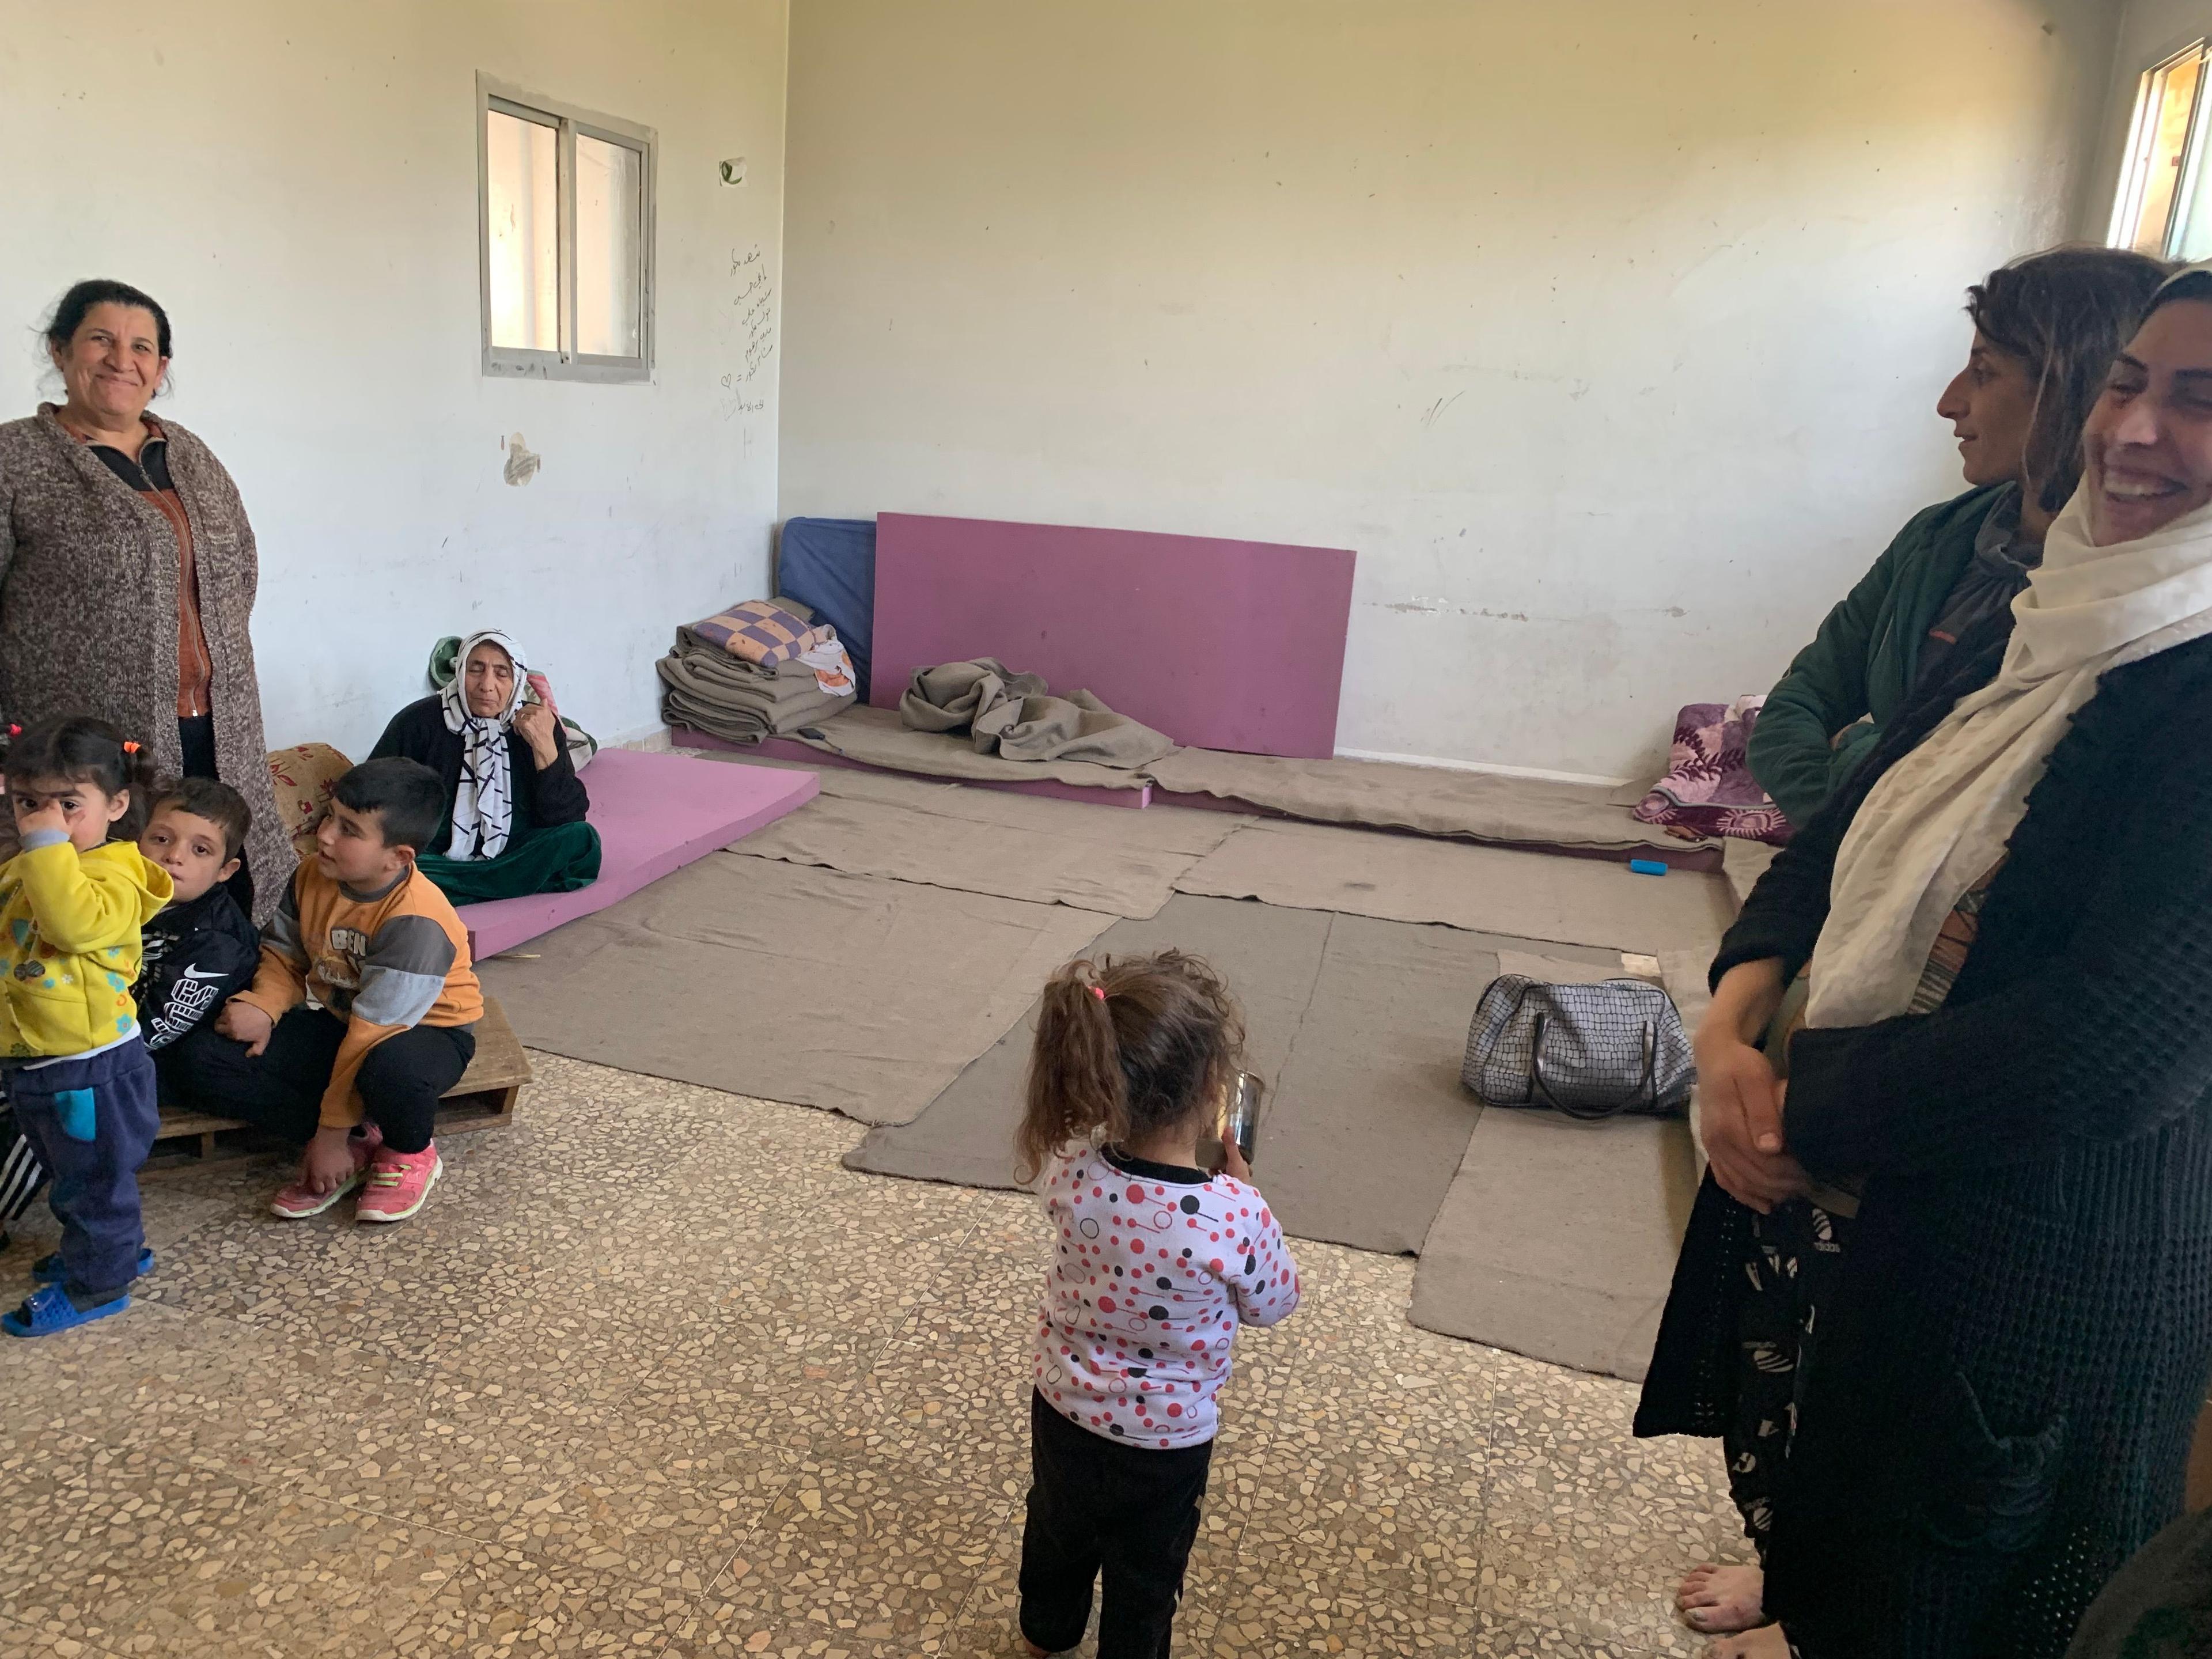 Tre donne e numerosi bambini in una stanza nella quale si vedono materassi e coperte.